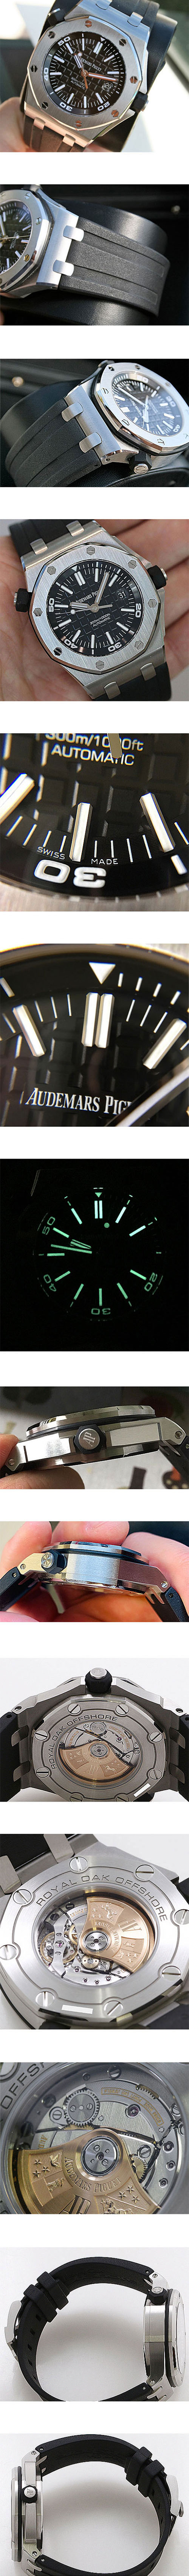 動力完璧 AUDEMARS PIGUET時計ロイヤルオークオフショア ダイバー 15710ST.OO.A002CA.01 デイト スーパールミナンス